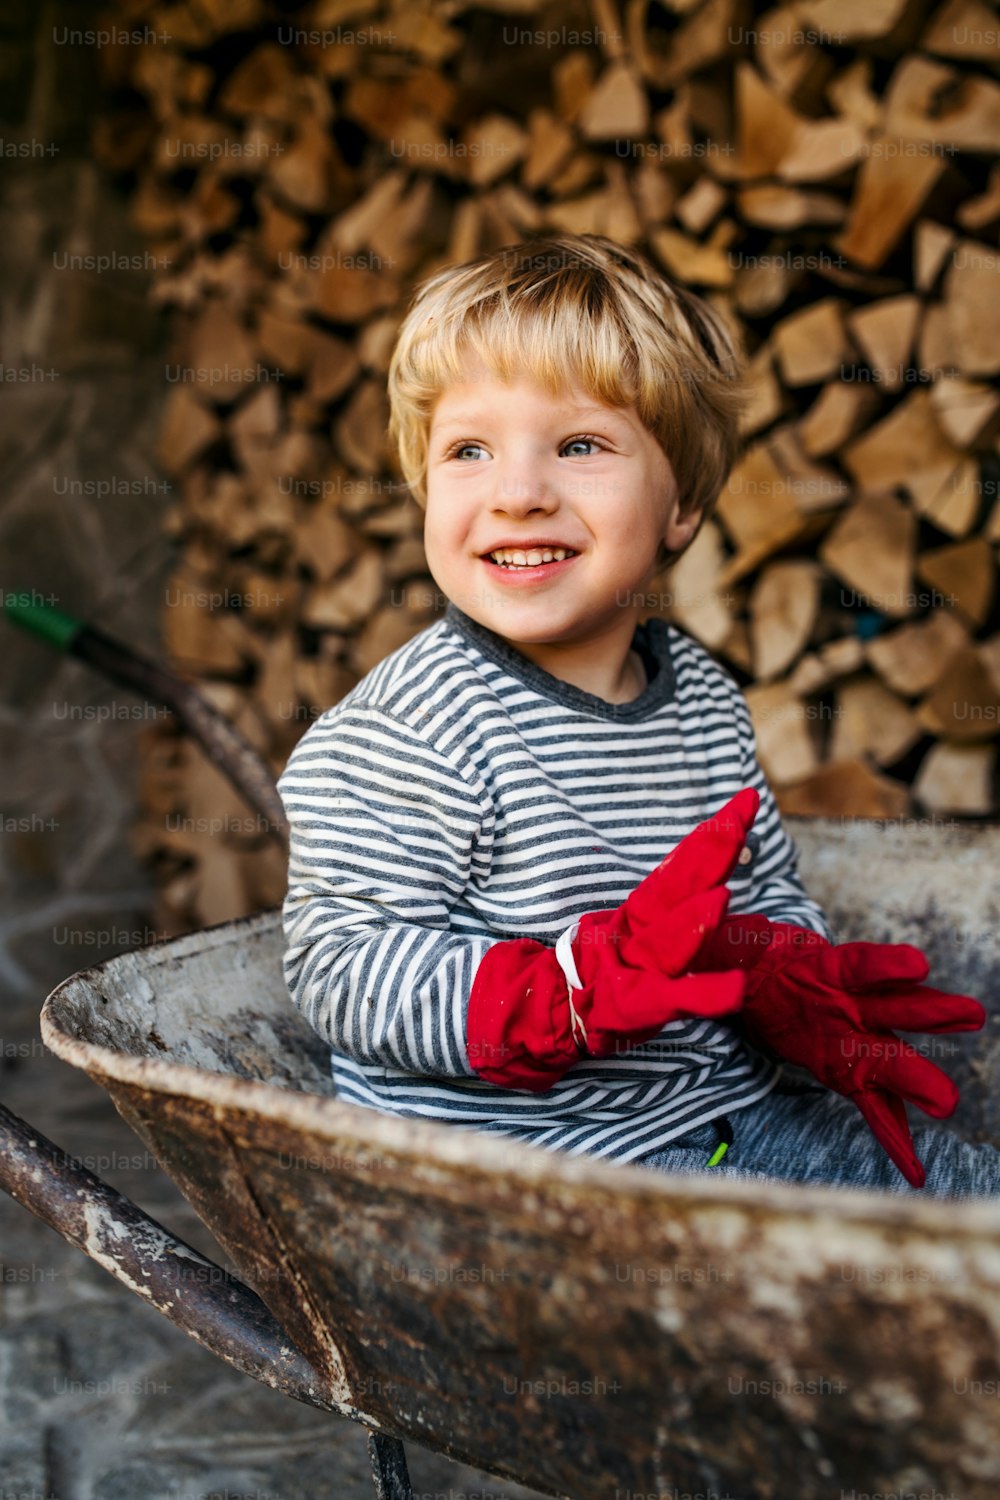 Ein glücklicher kleiner Junge im Sommer, der in einer Schubkarre sitzt.